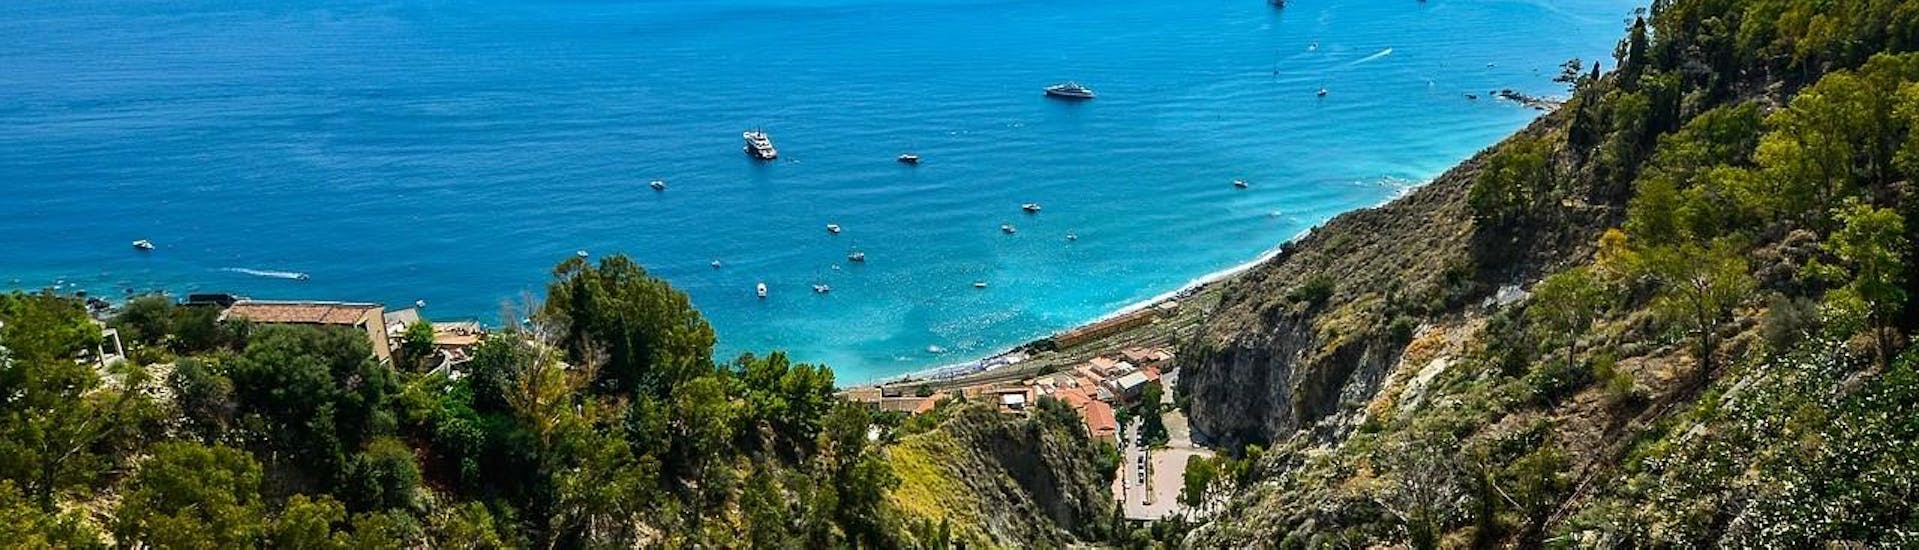 Foto panoramica mozzafiato della costa di Taormina, visitabile durante un giro in barca con Enjoy Sicily.